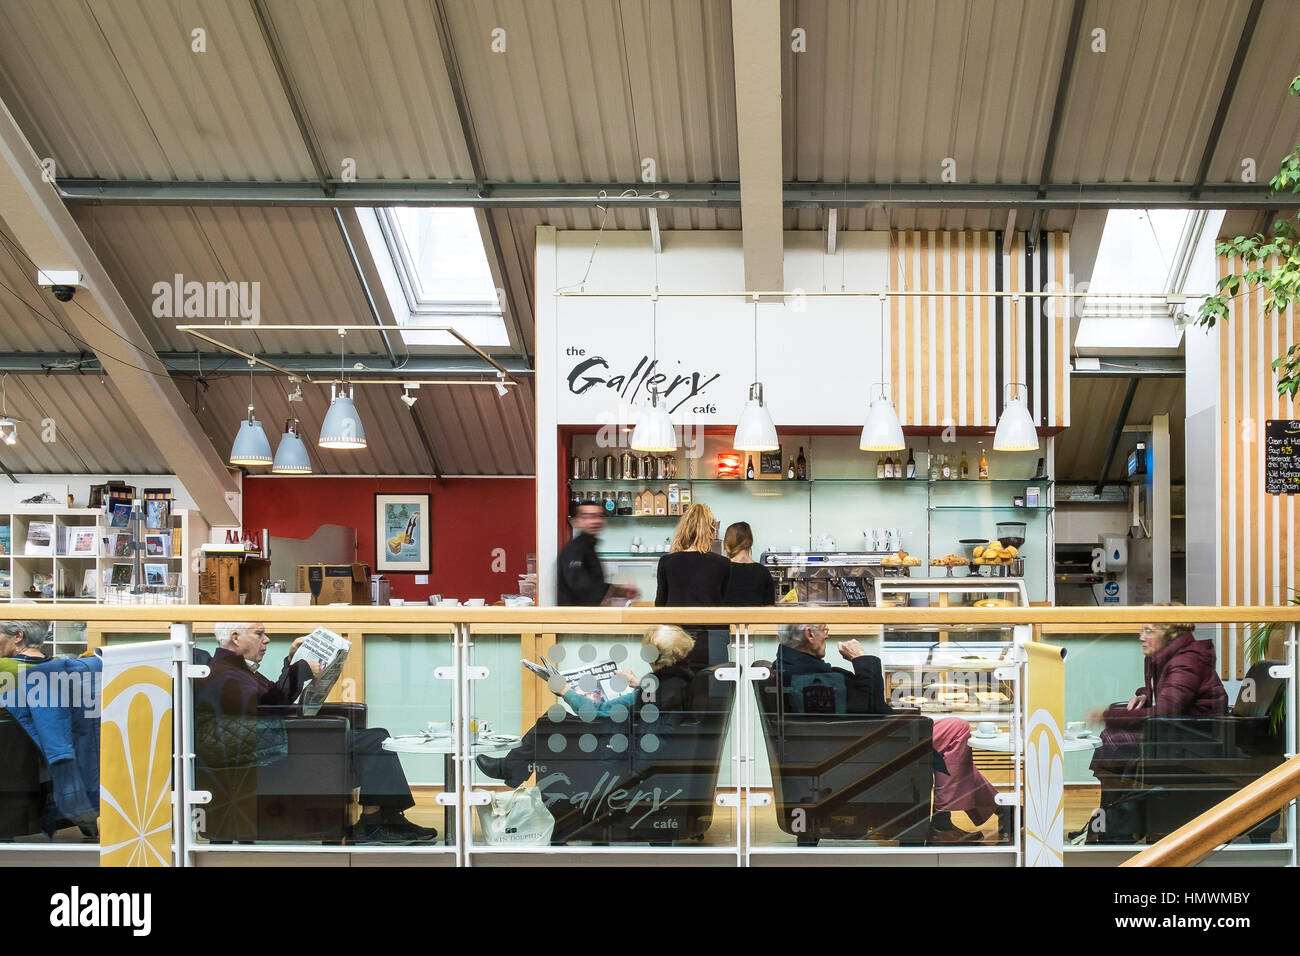 Kunden entspannen Sie in der Galerie Cafe in Zitrone Quay Market, Truro, Cornwall, England, UK. Stockfoto